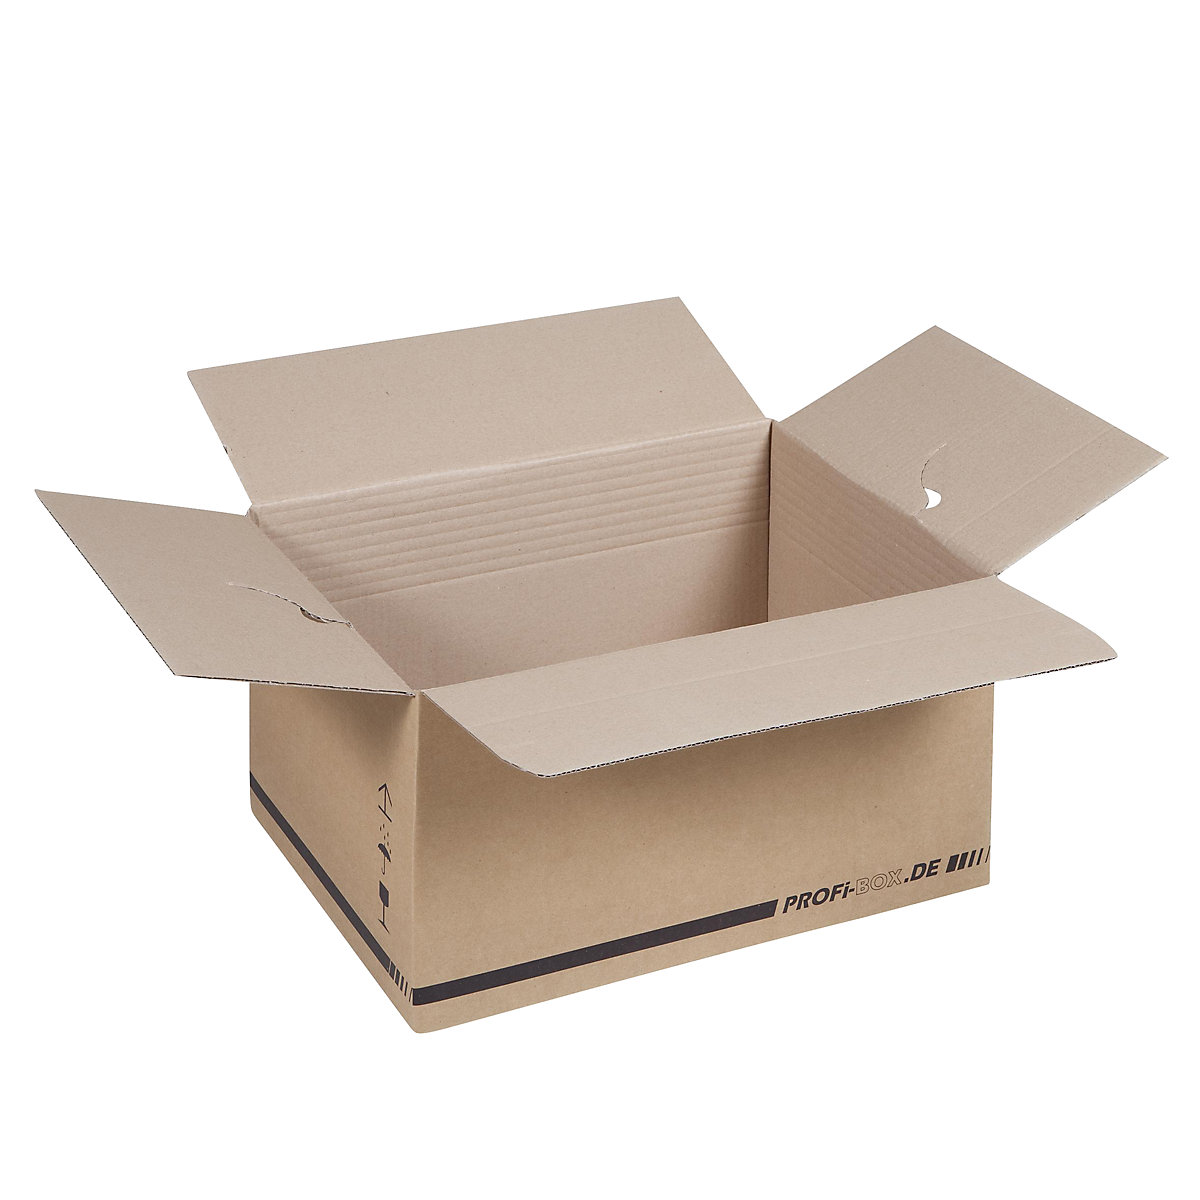 Caixas profissionais, em papelão simples, FEFCO 0701, dimensões interiores 445 x 315 x 235 mm, embalagem de 50 unid.-9